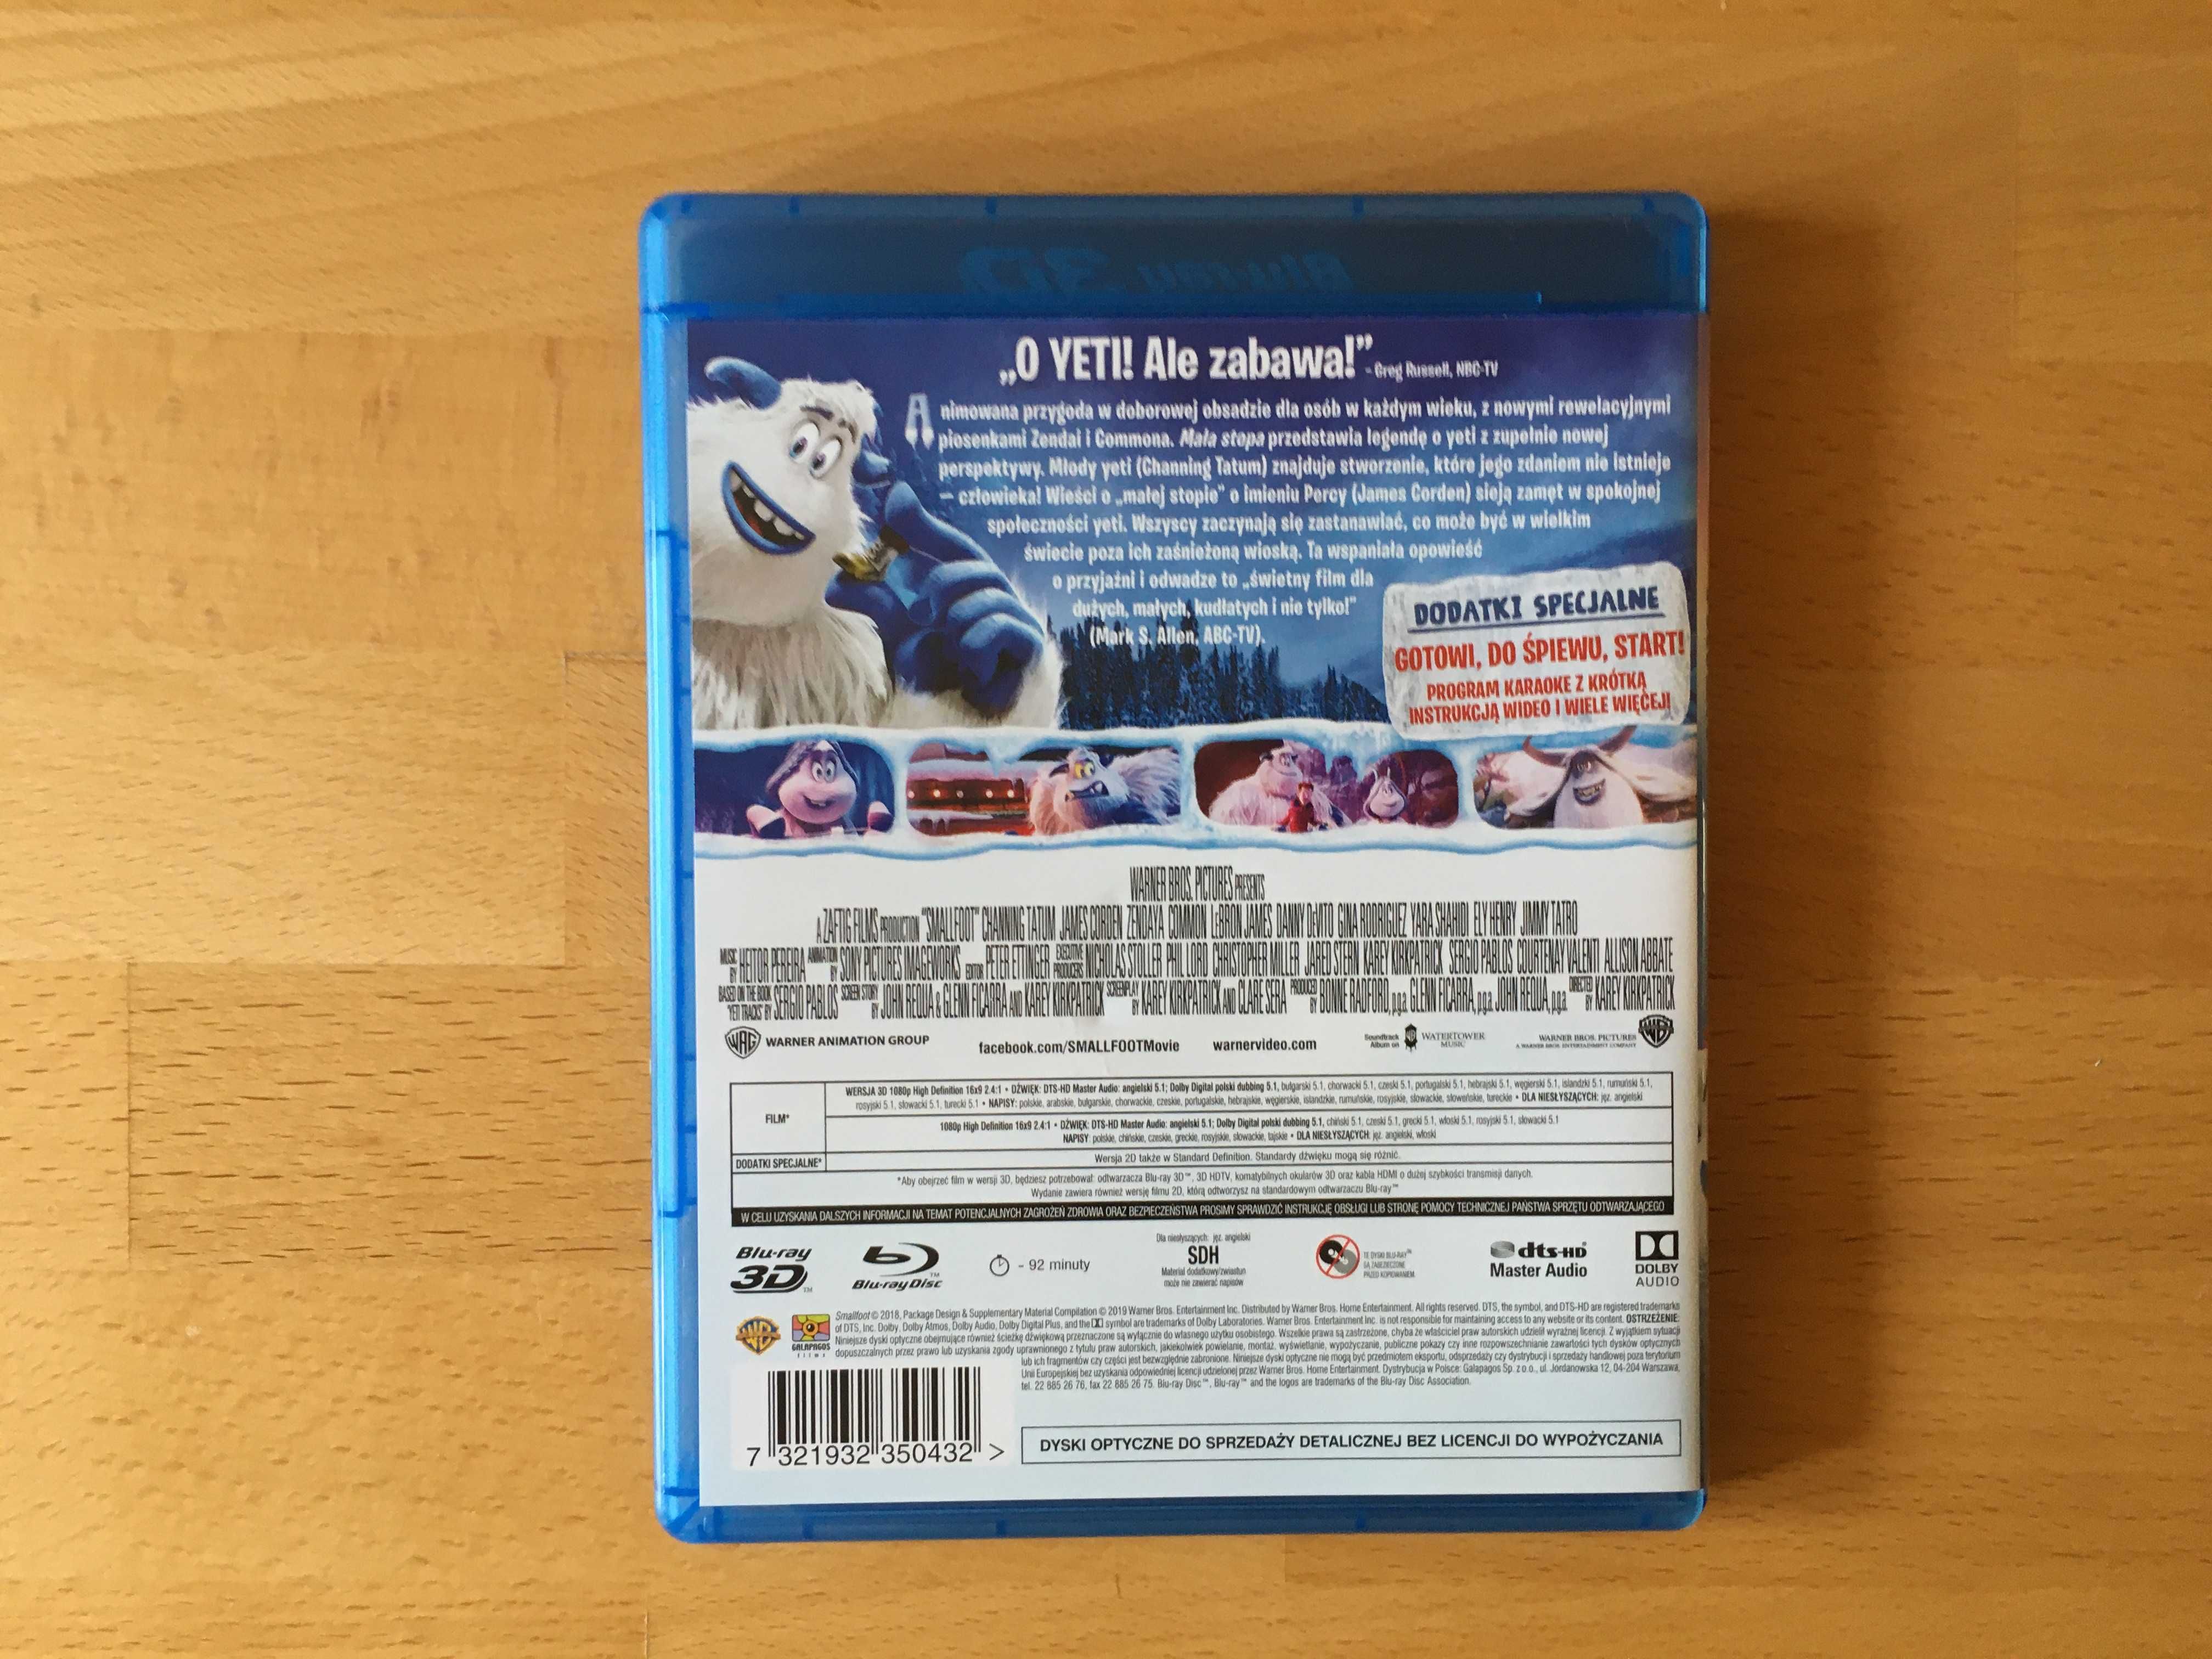 O Yeti! Blu-Ray 3D + Blu-Ray